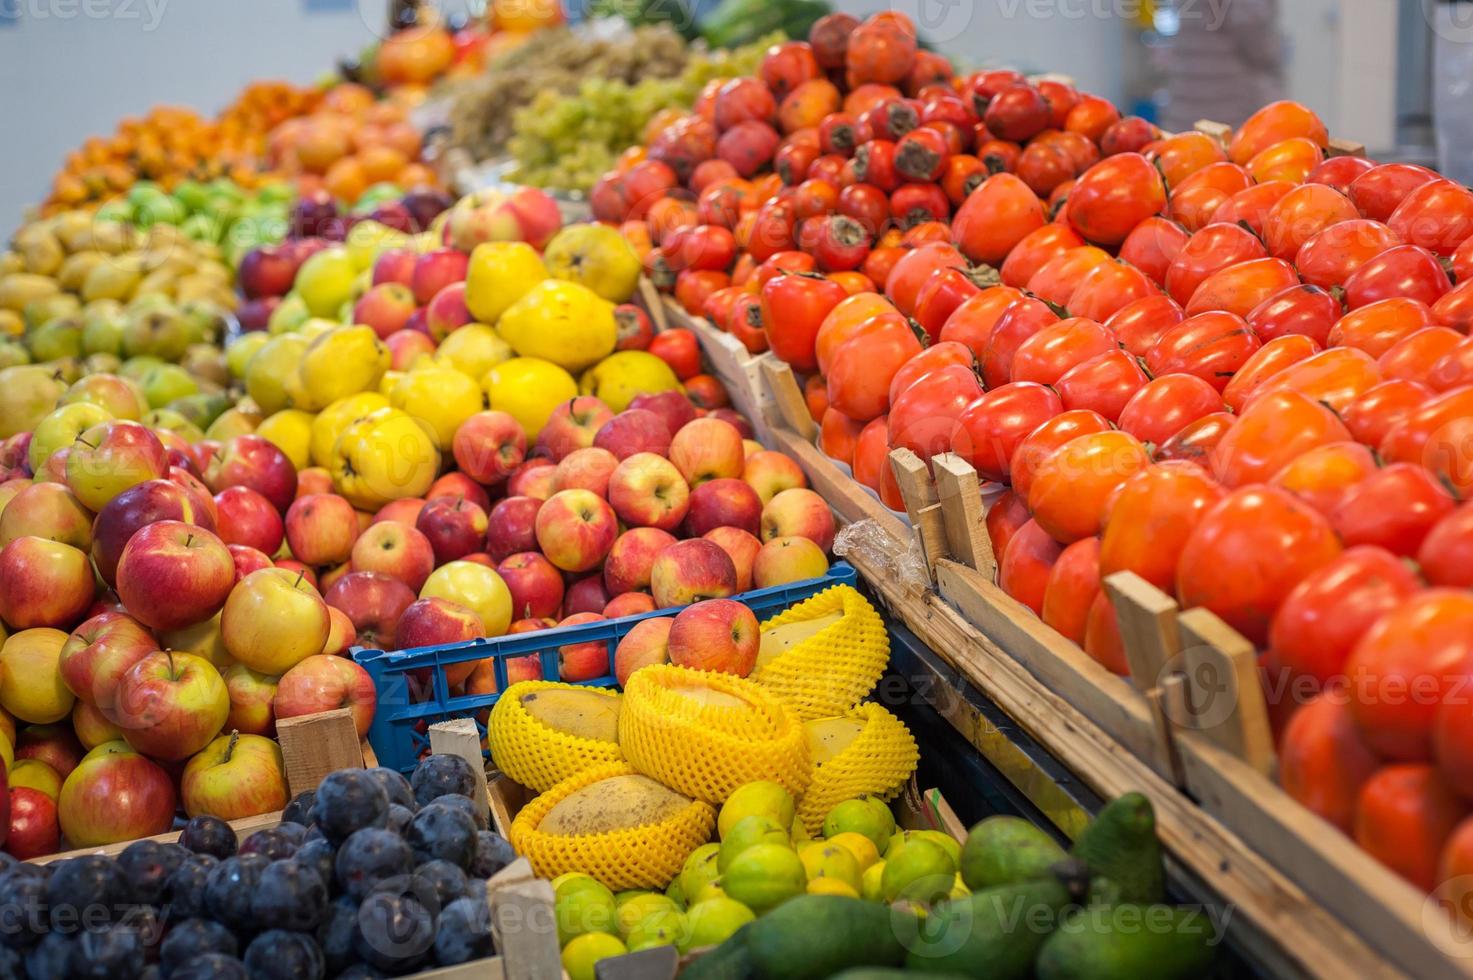 marché aux fruits avec divers fruits et légumes frais colorés photo